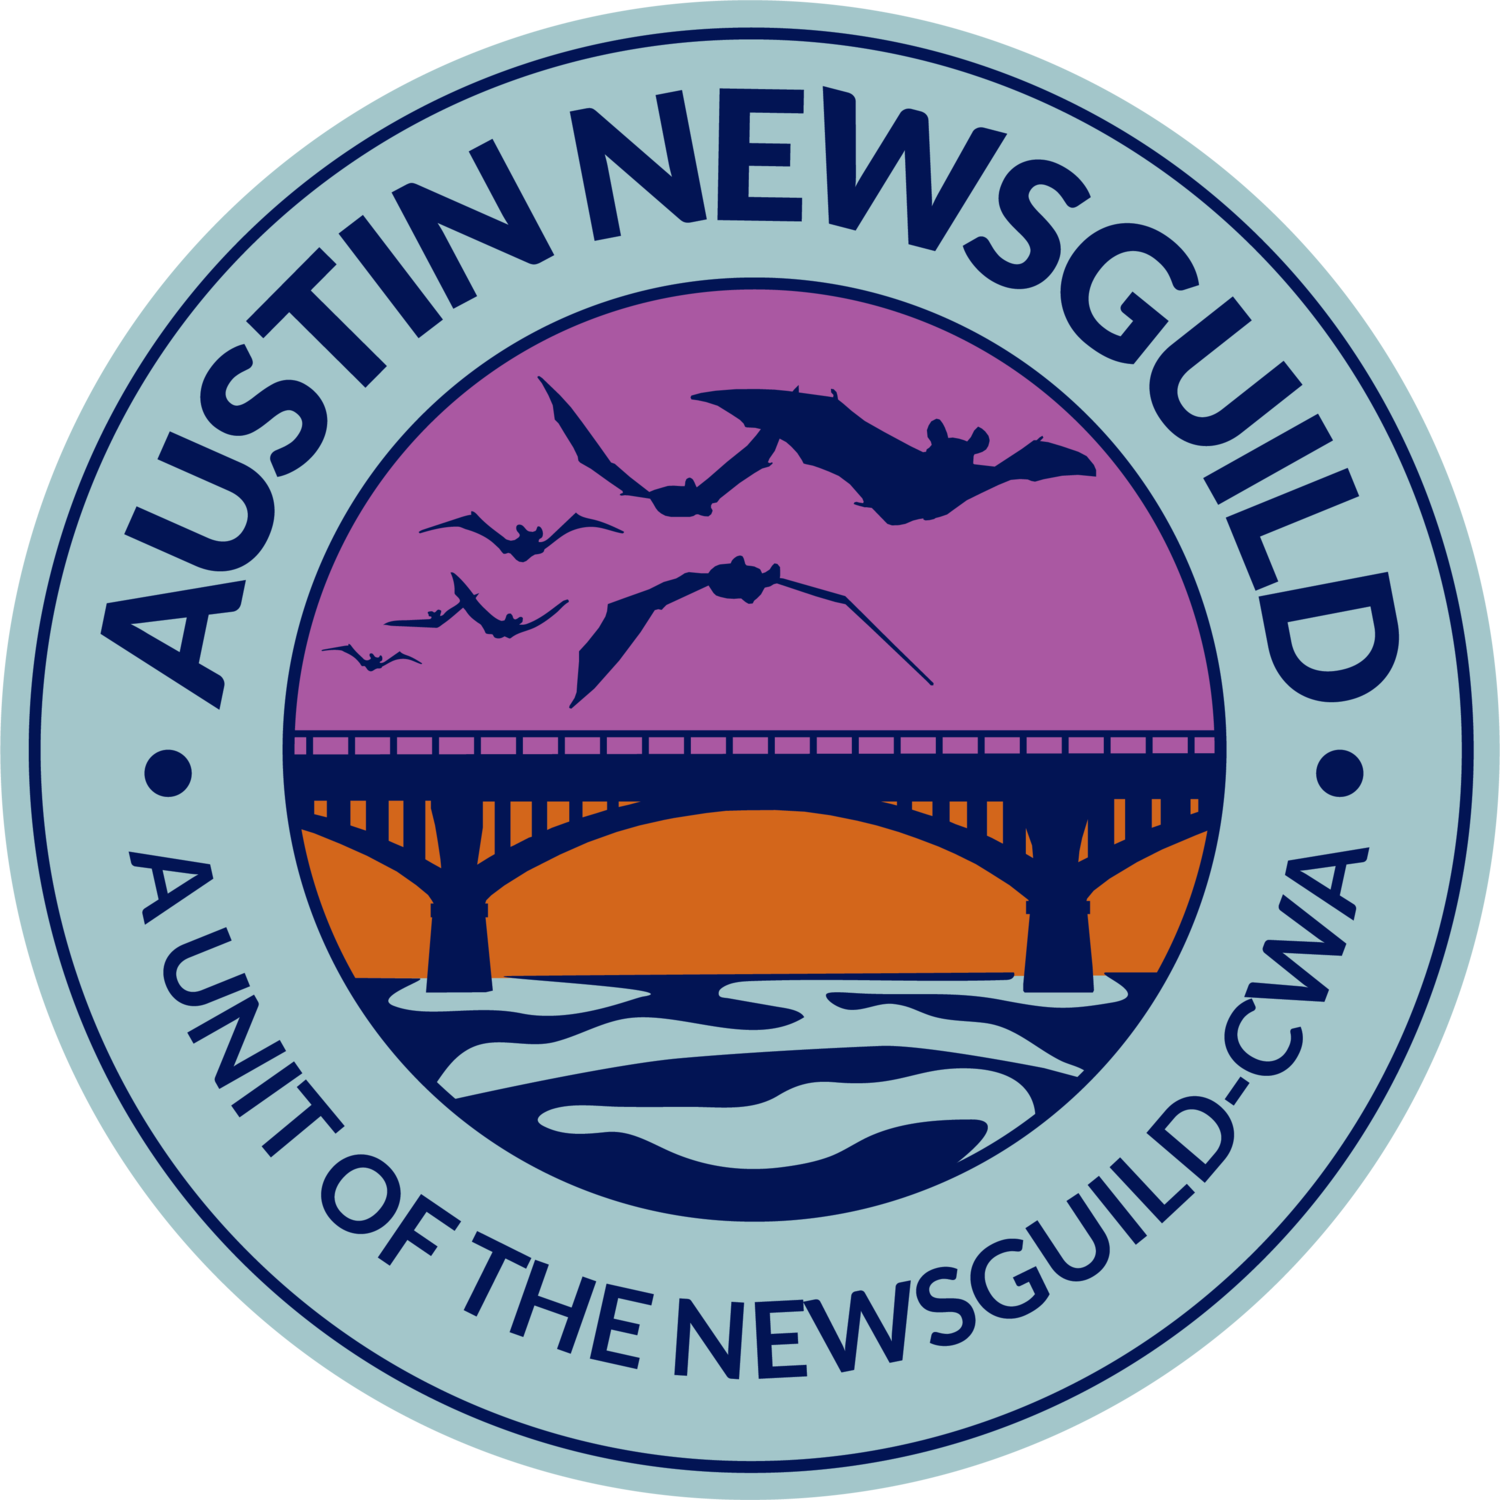 Austin NewsGuild